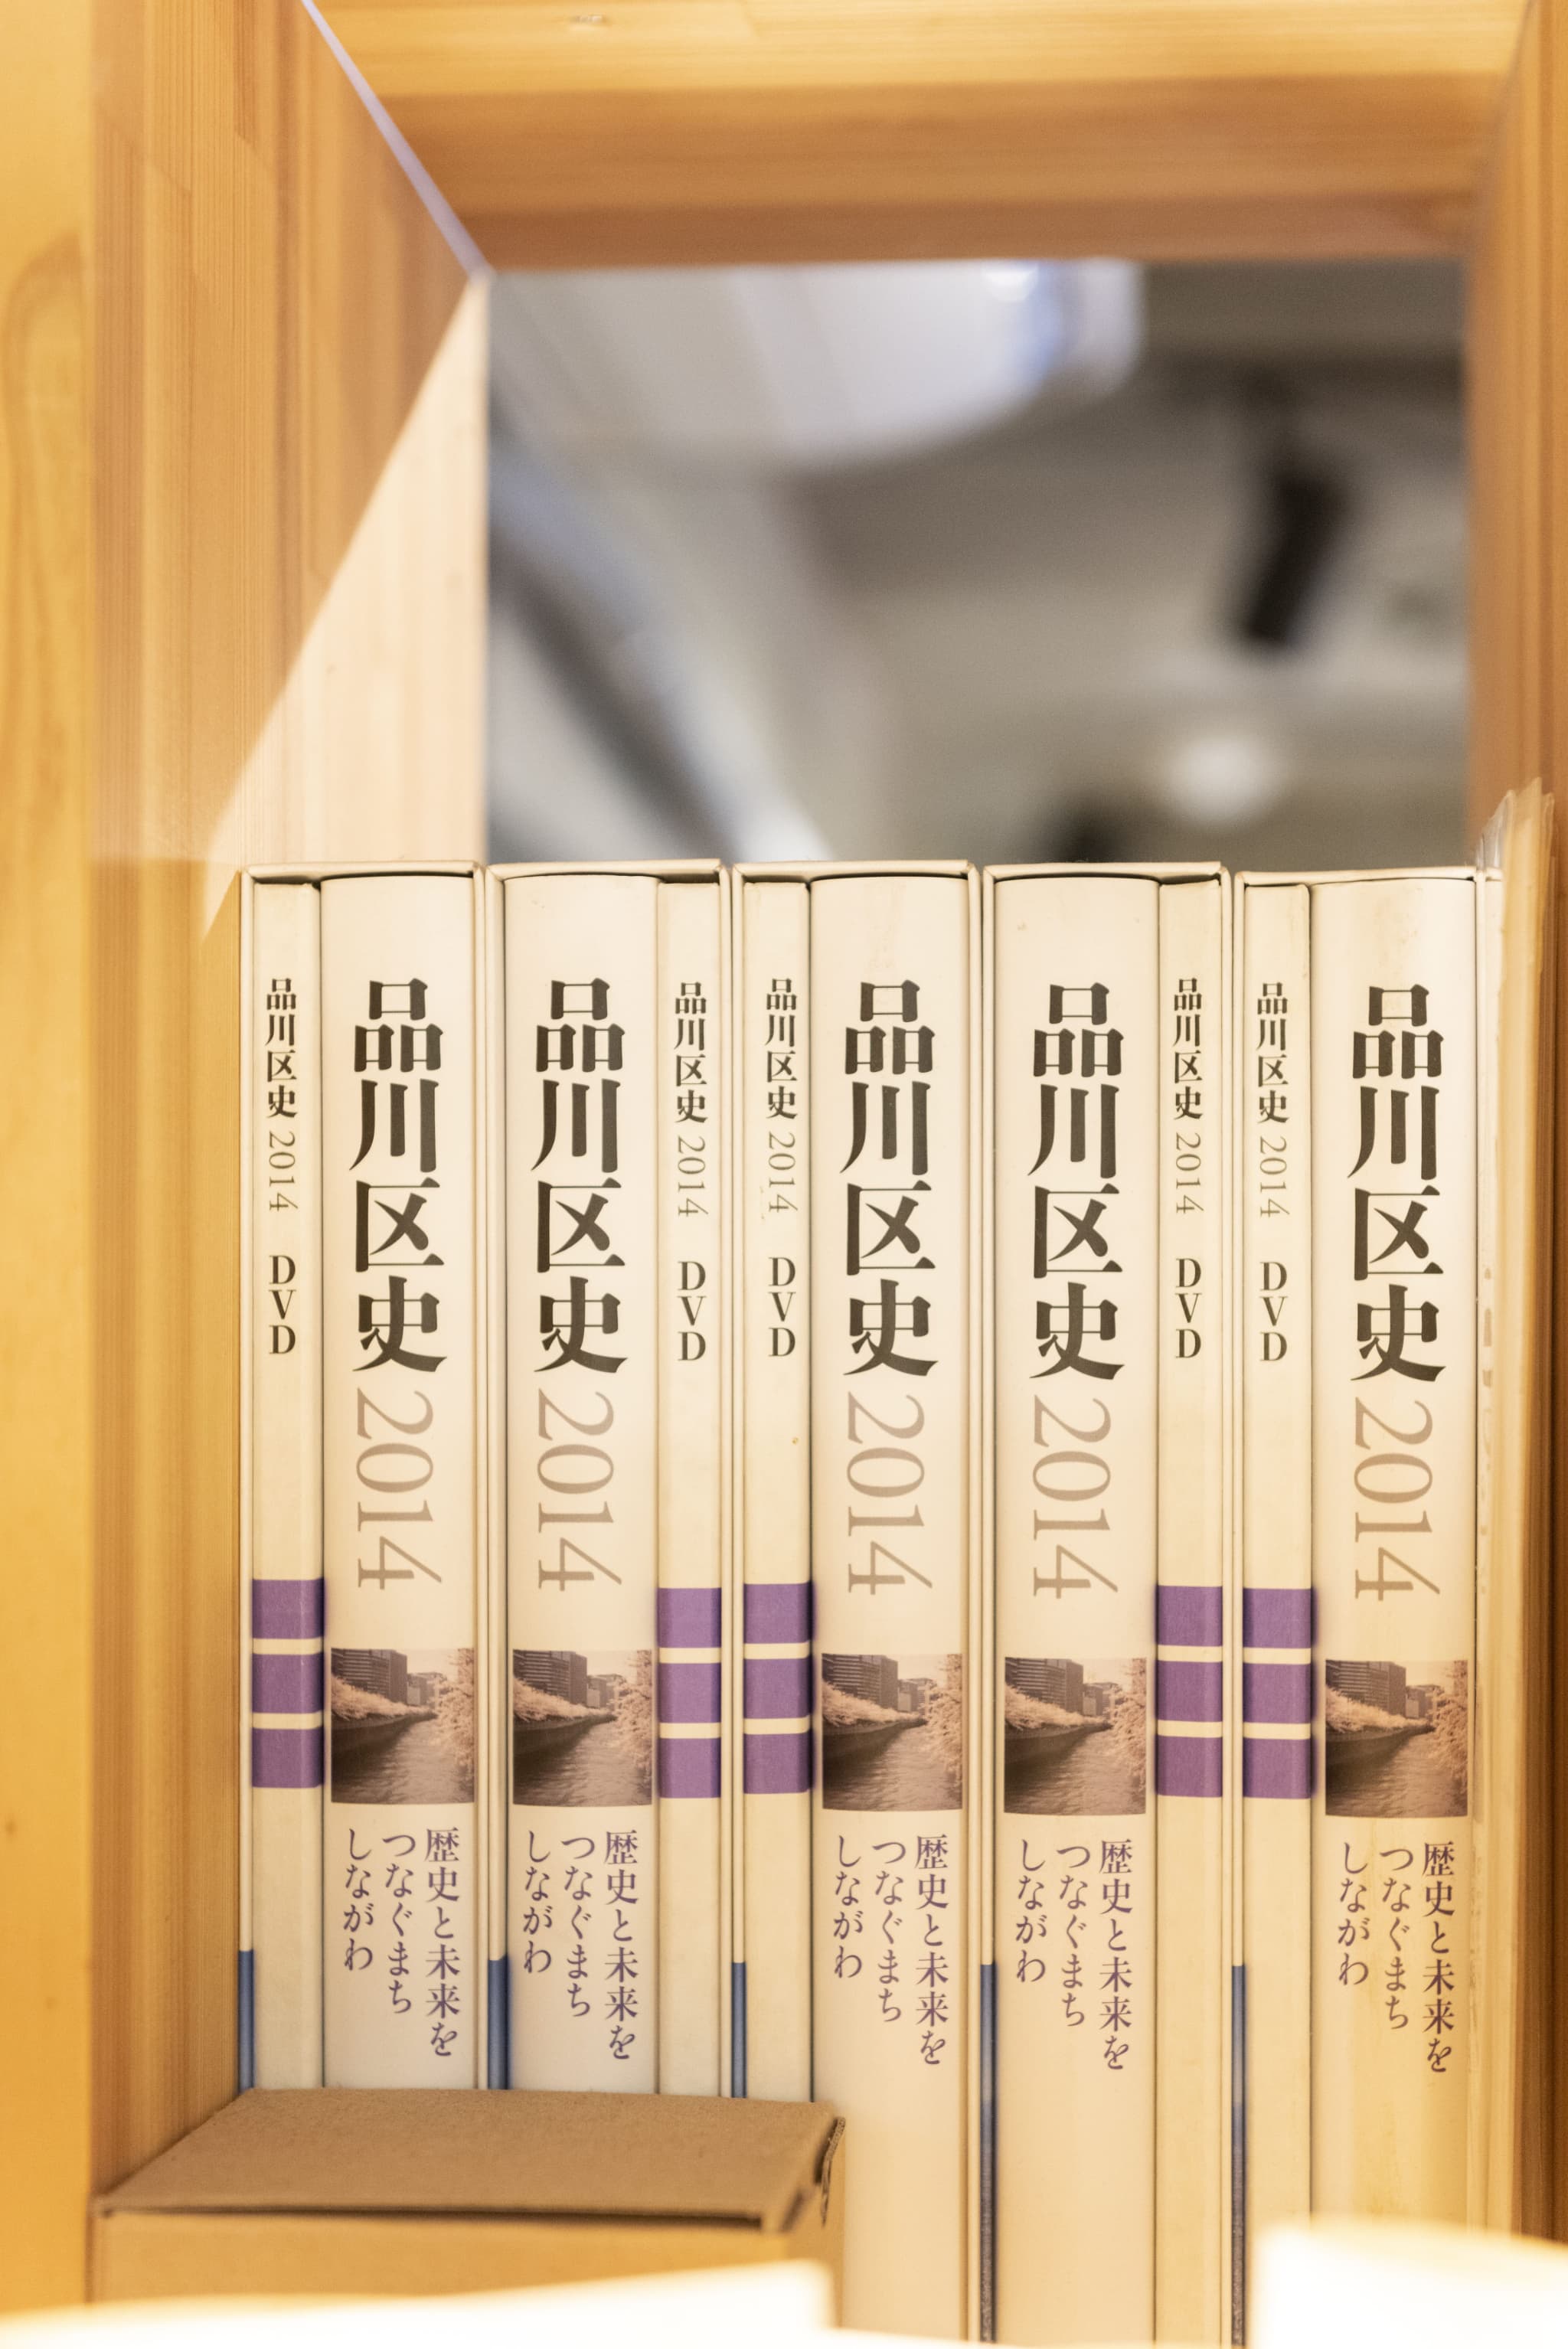 旅×本。品川でかつての宿場町の賑わいを取り戻す「KAIDO books & coffee」【しあわせの読書空間 vol.2】